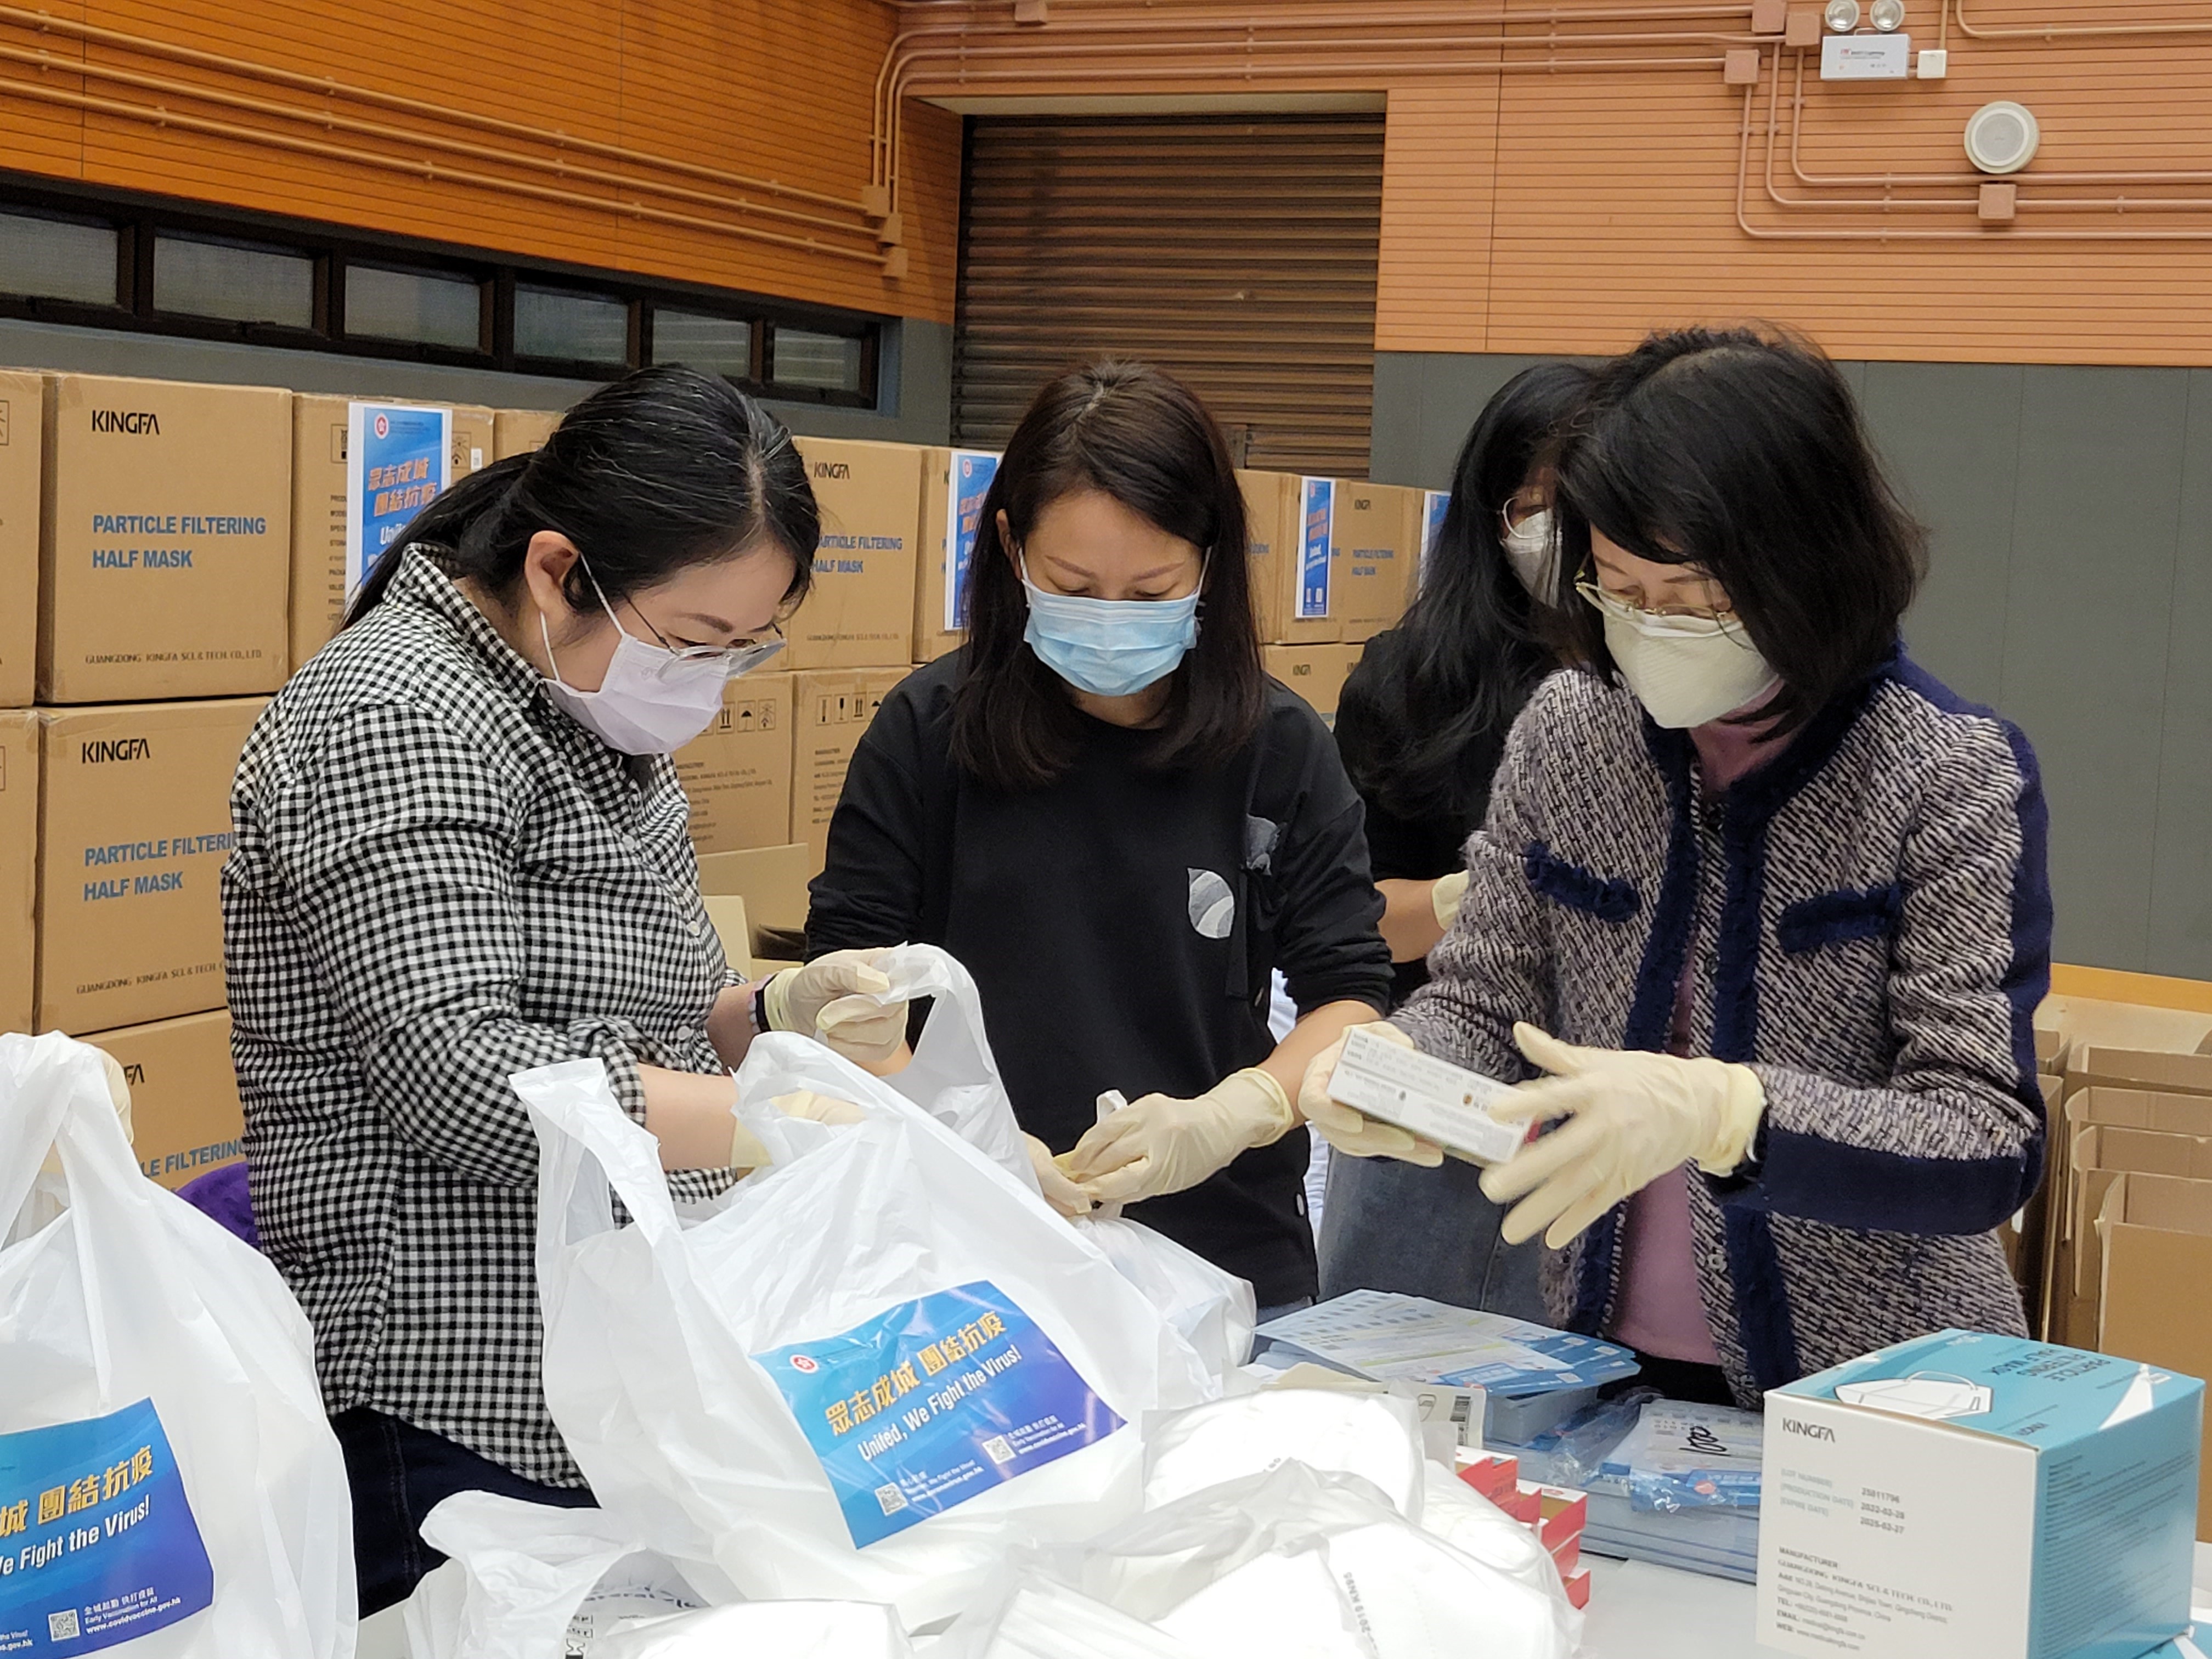 土 地 注 册 处 处 长 谭 惠 仪 女 士 ， JP （右 一）与 同 事 一 起 进 行 防 疫 服 务 包 的 包 装 工 作 。